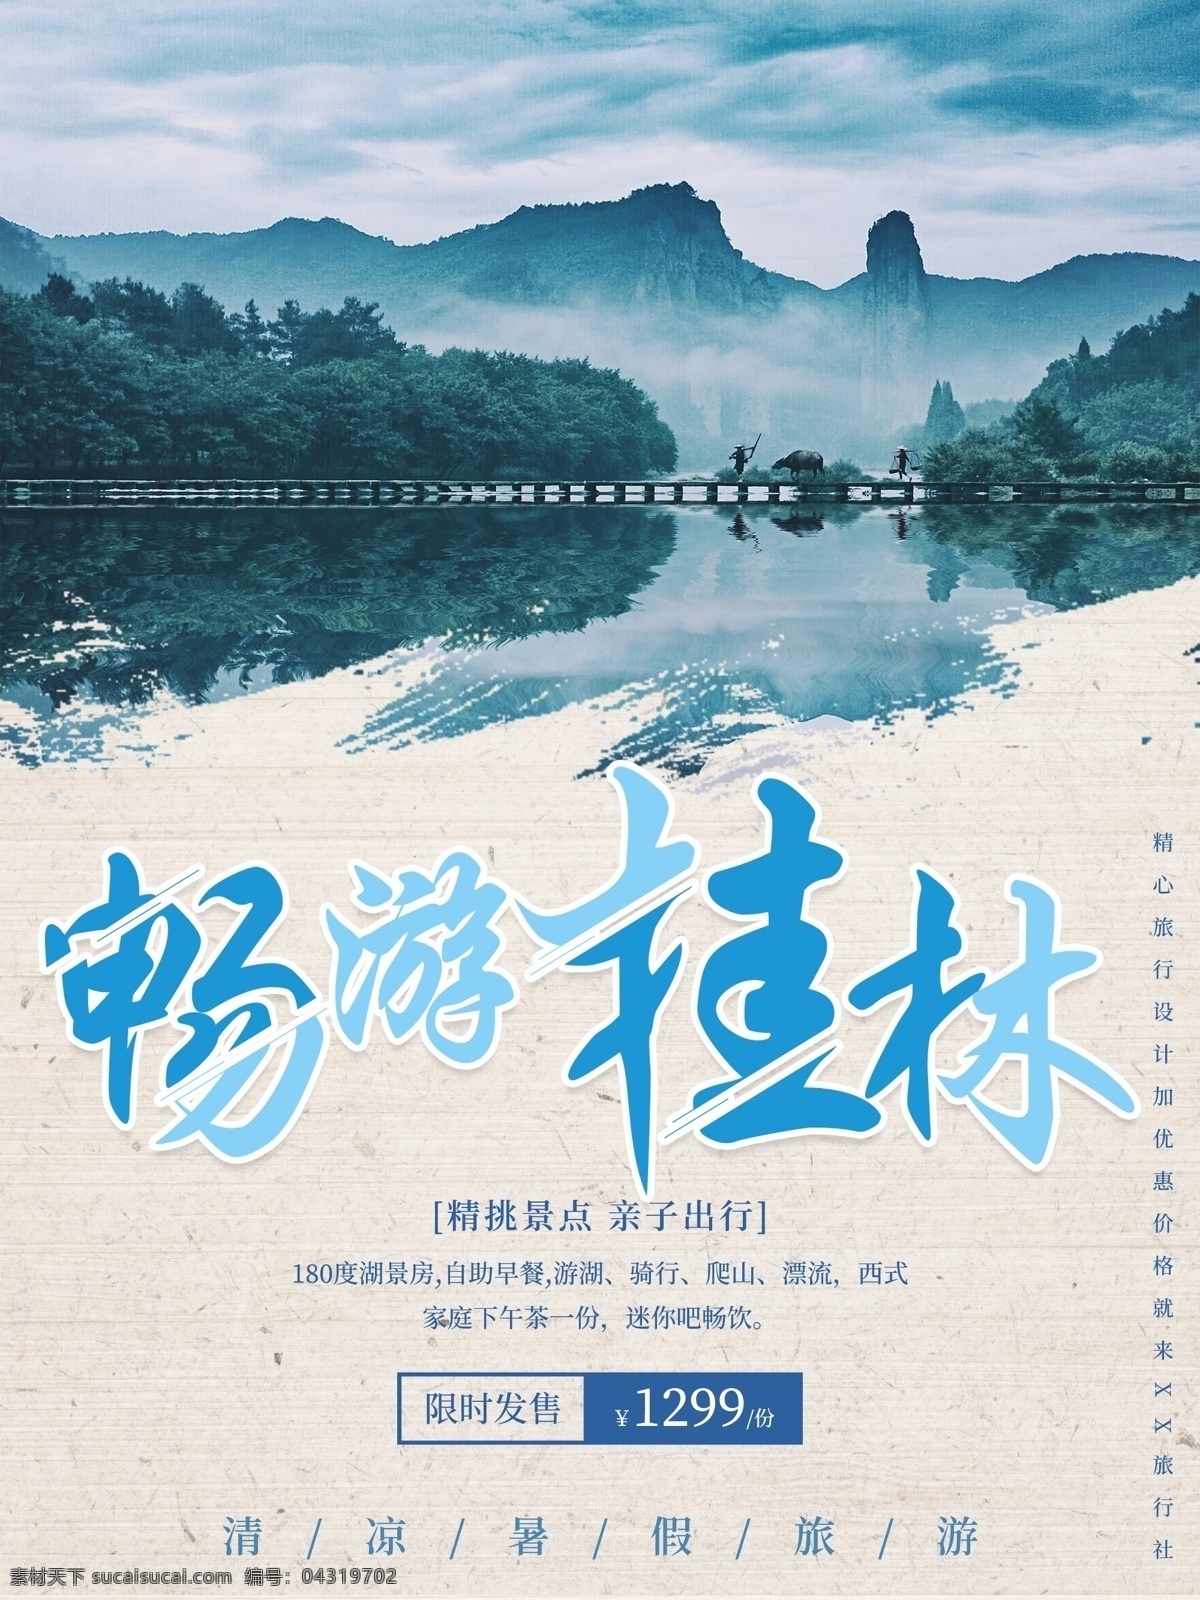 最美 桂林 暑期 旅游 海报 免费素材 平面素材 海报模板 暑期游 山水 甲天下 魅力中国 桂林旅游 暑期旅游